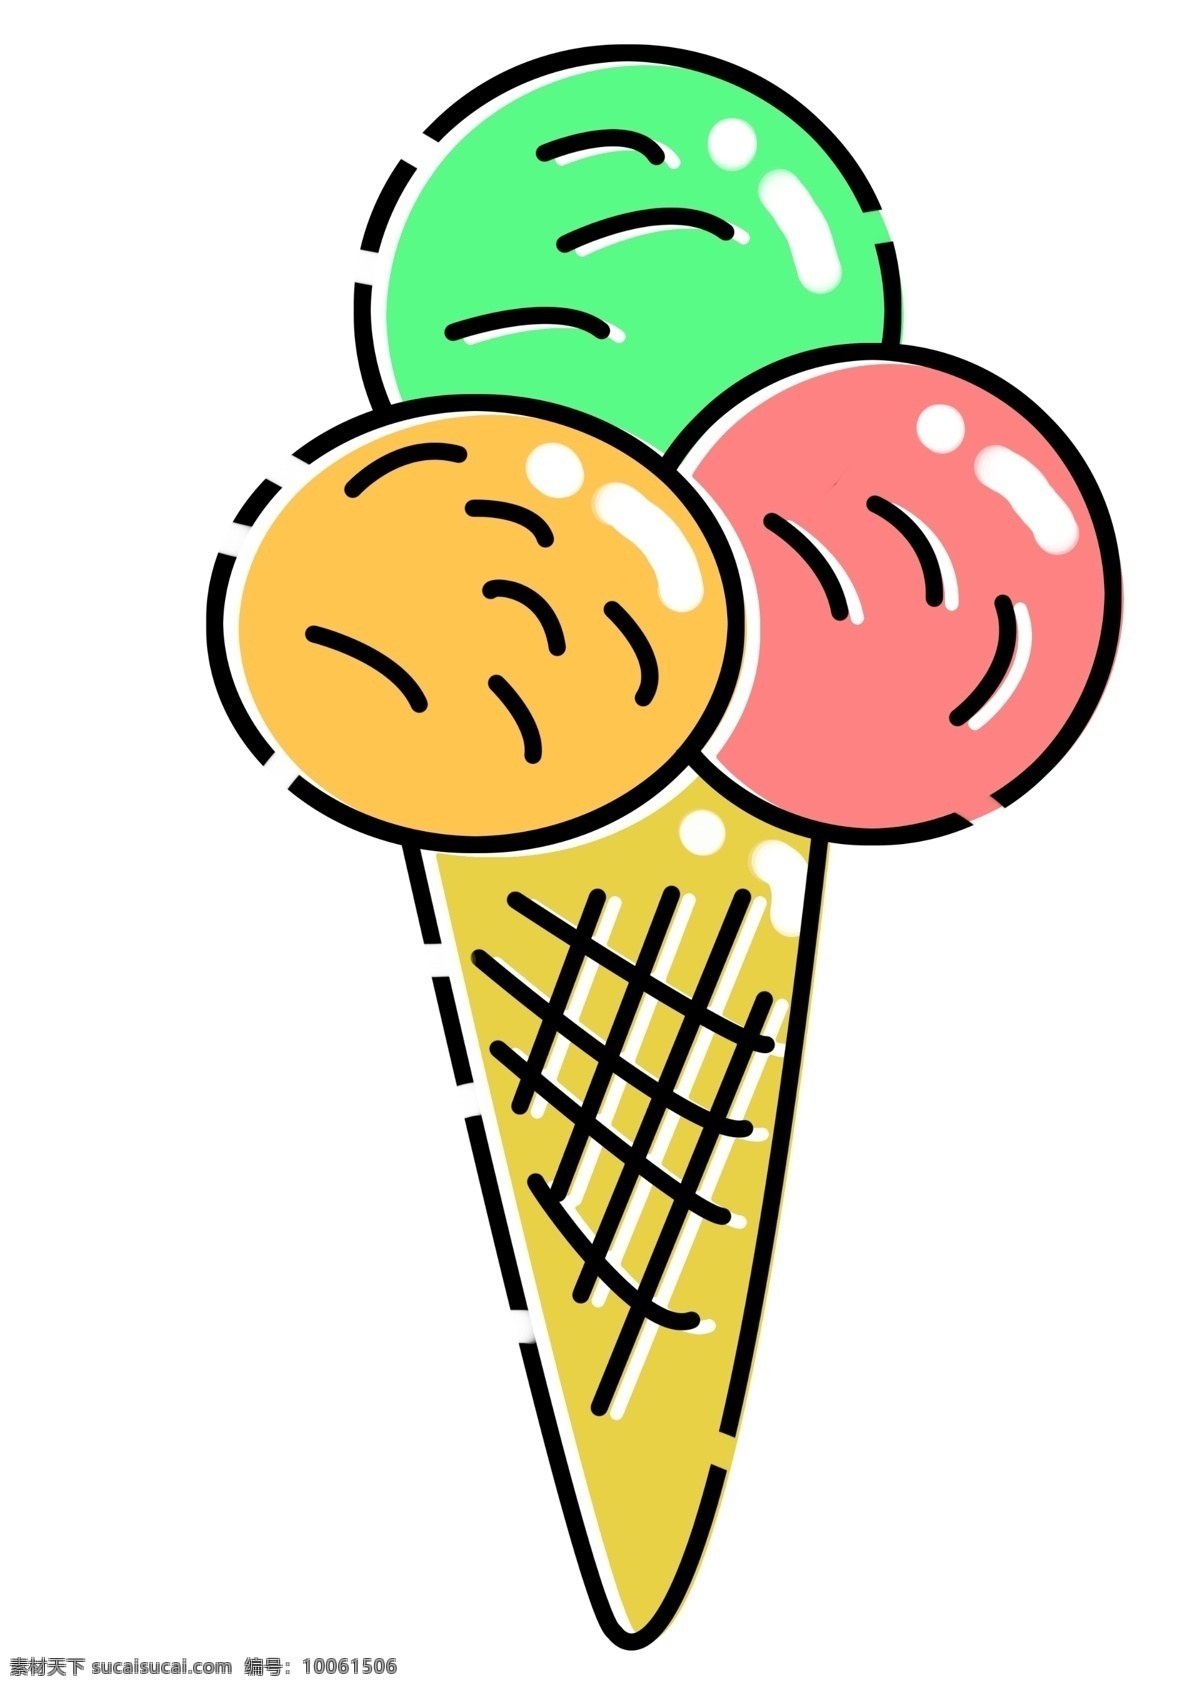 初夏 小 清新 冰淇淋 初夏小清新 冰淇淋小物件 炎热的夏天 凉爽可口 冰淇淋手绘 可爱萌物 mbe风格